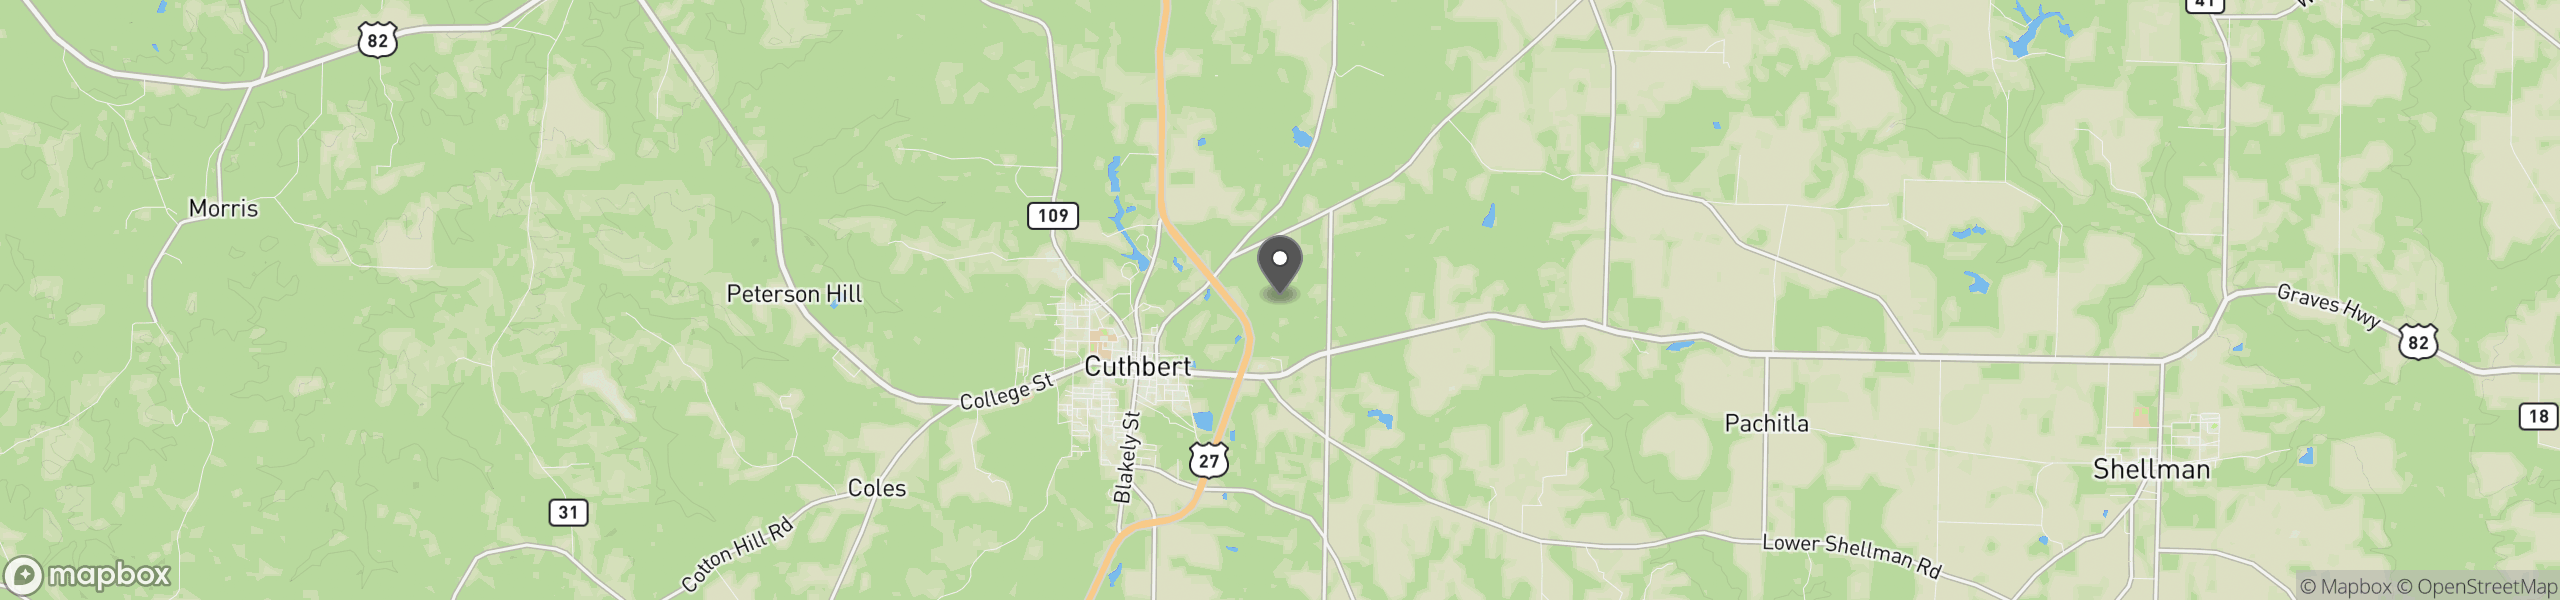 Cuthbert, GA